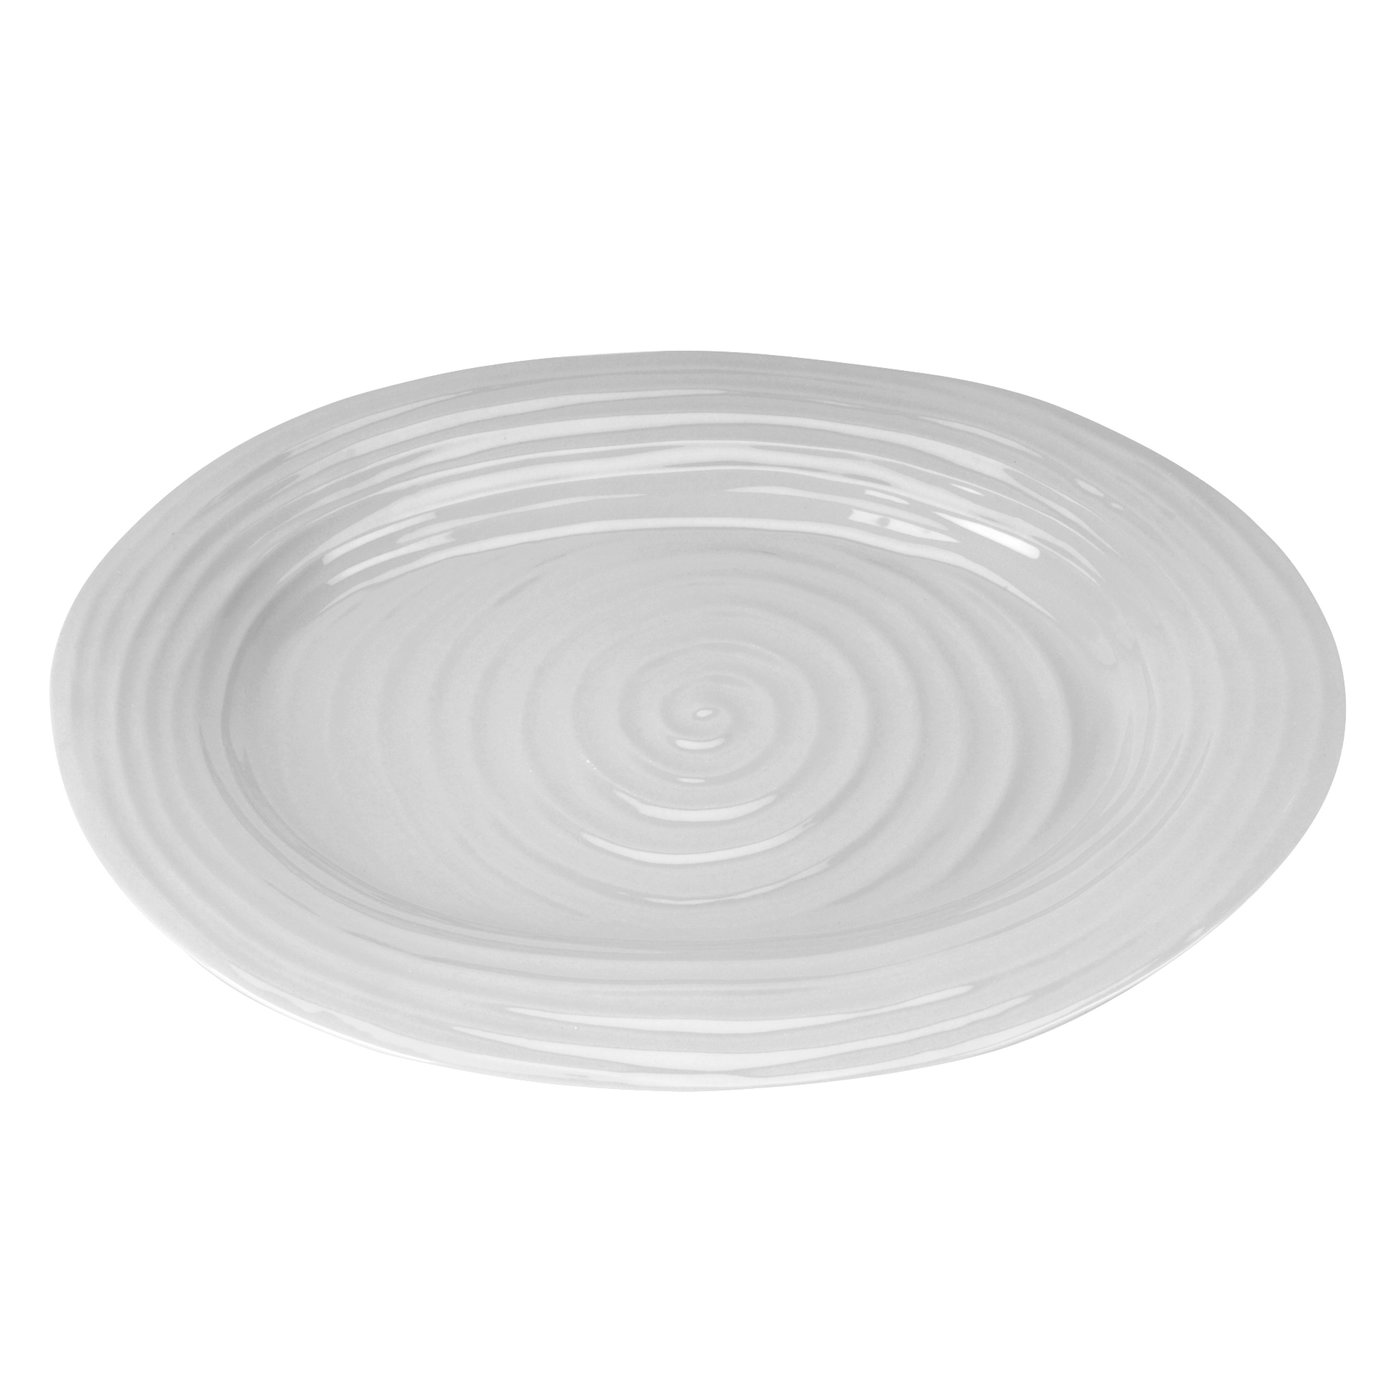 포트메리온 '소피 콘란' 미디움 오발 접시 Portmeirion Sophie Conran Grey Medium Oval Platter